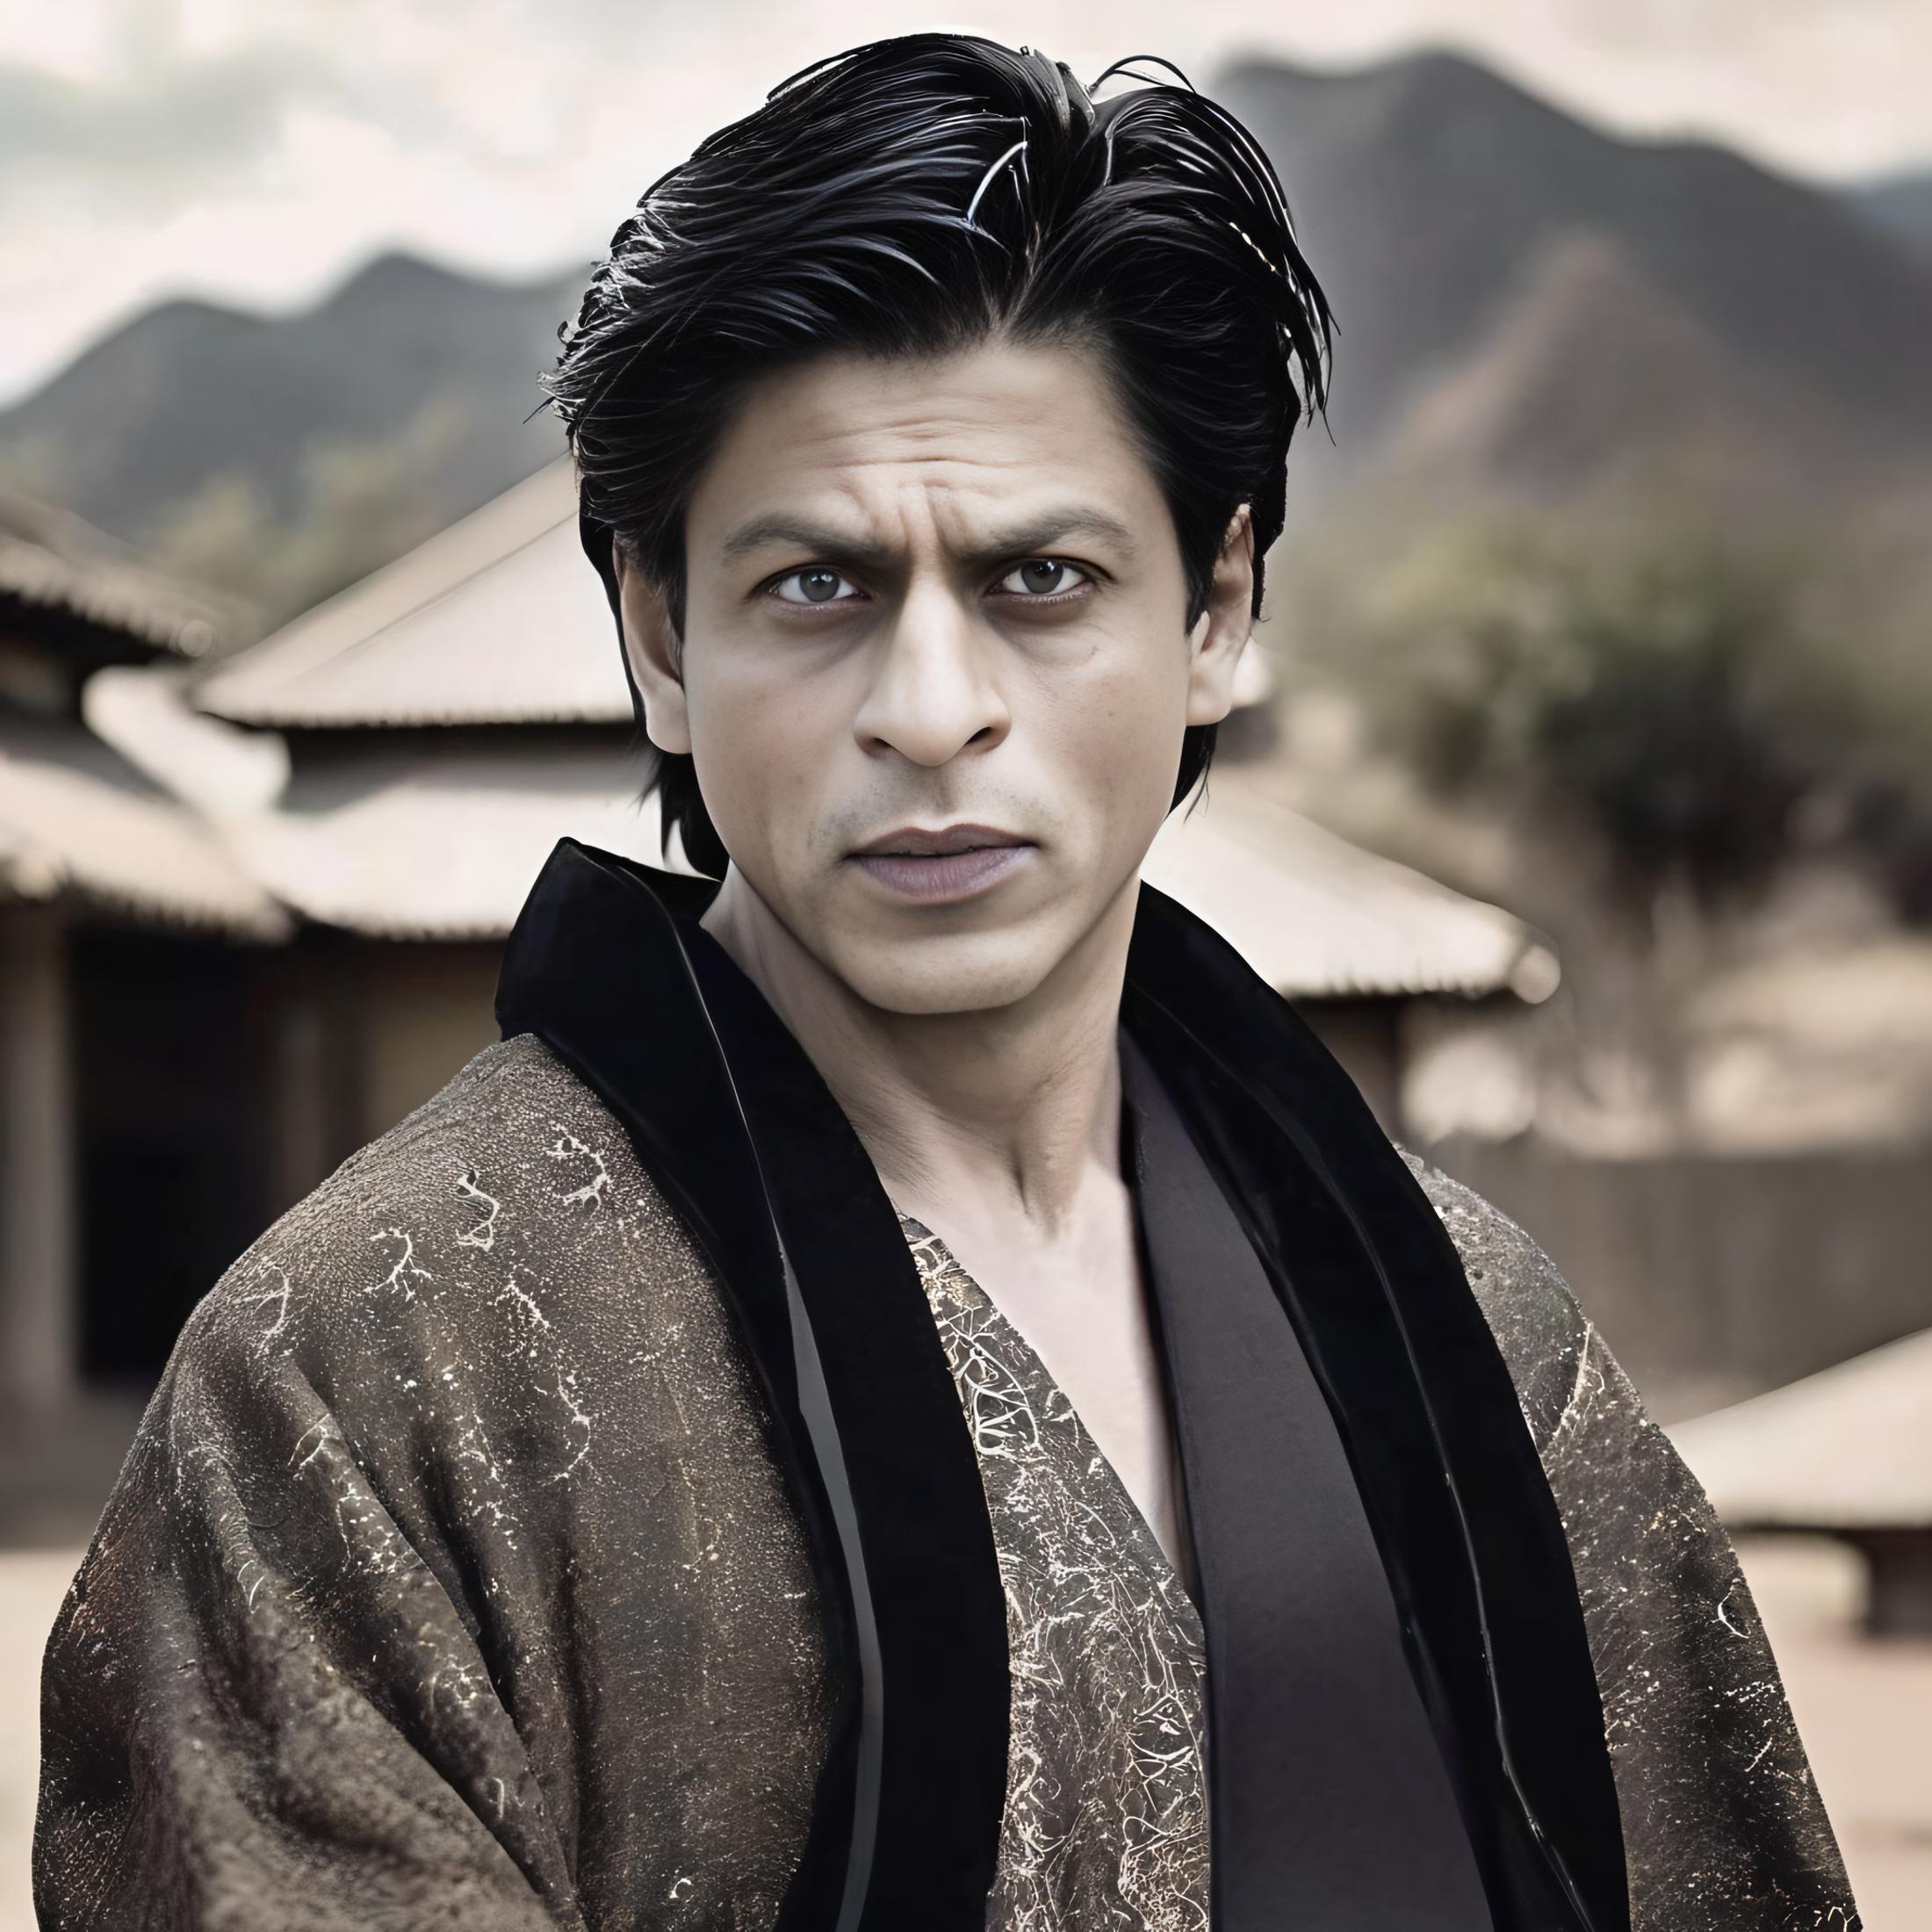 Shah Rukh Khan image by parar20